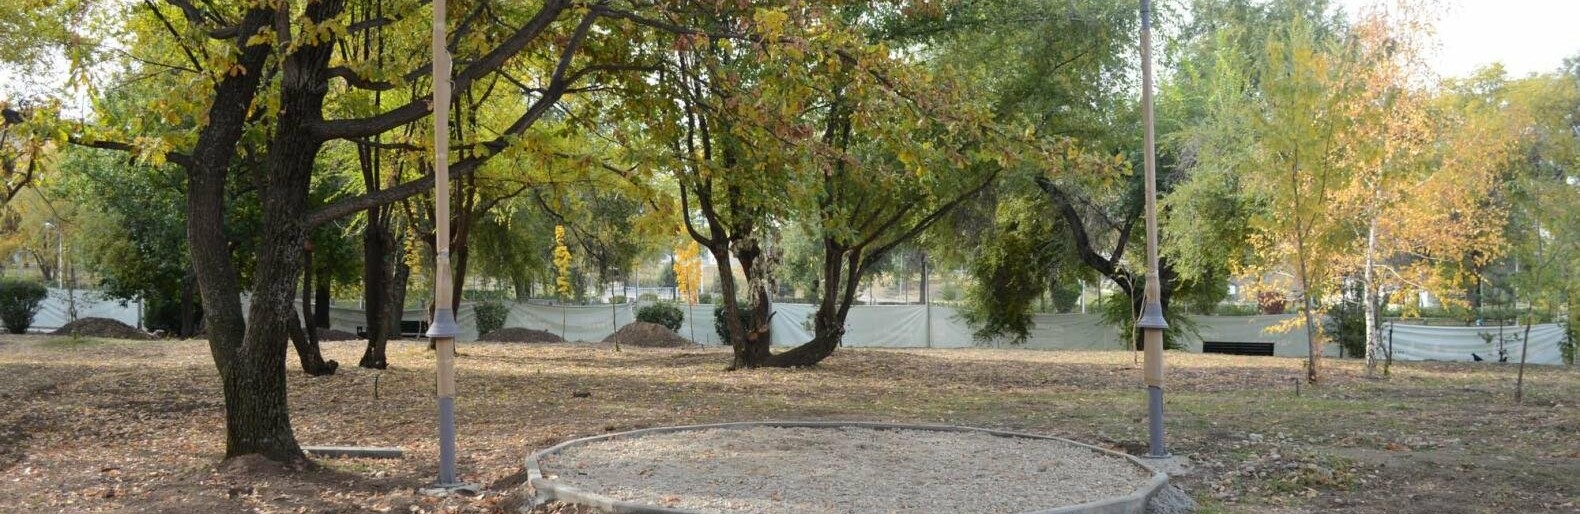 Переложить плитку и постелить газон обещают в парке «Дружбы» в Алматы